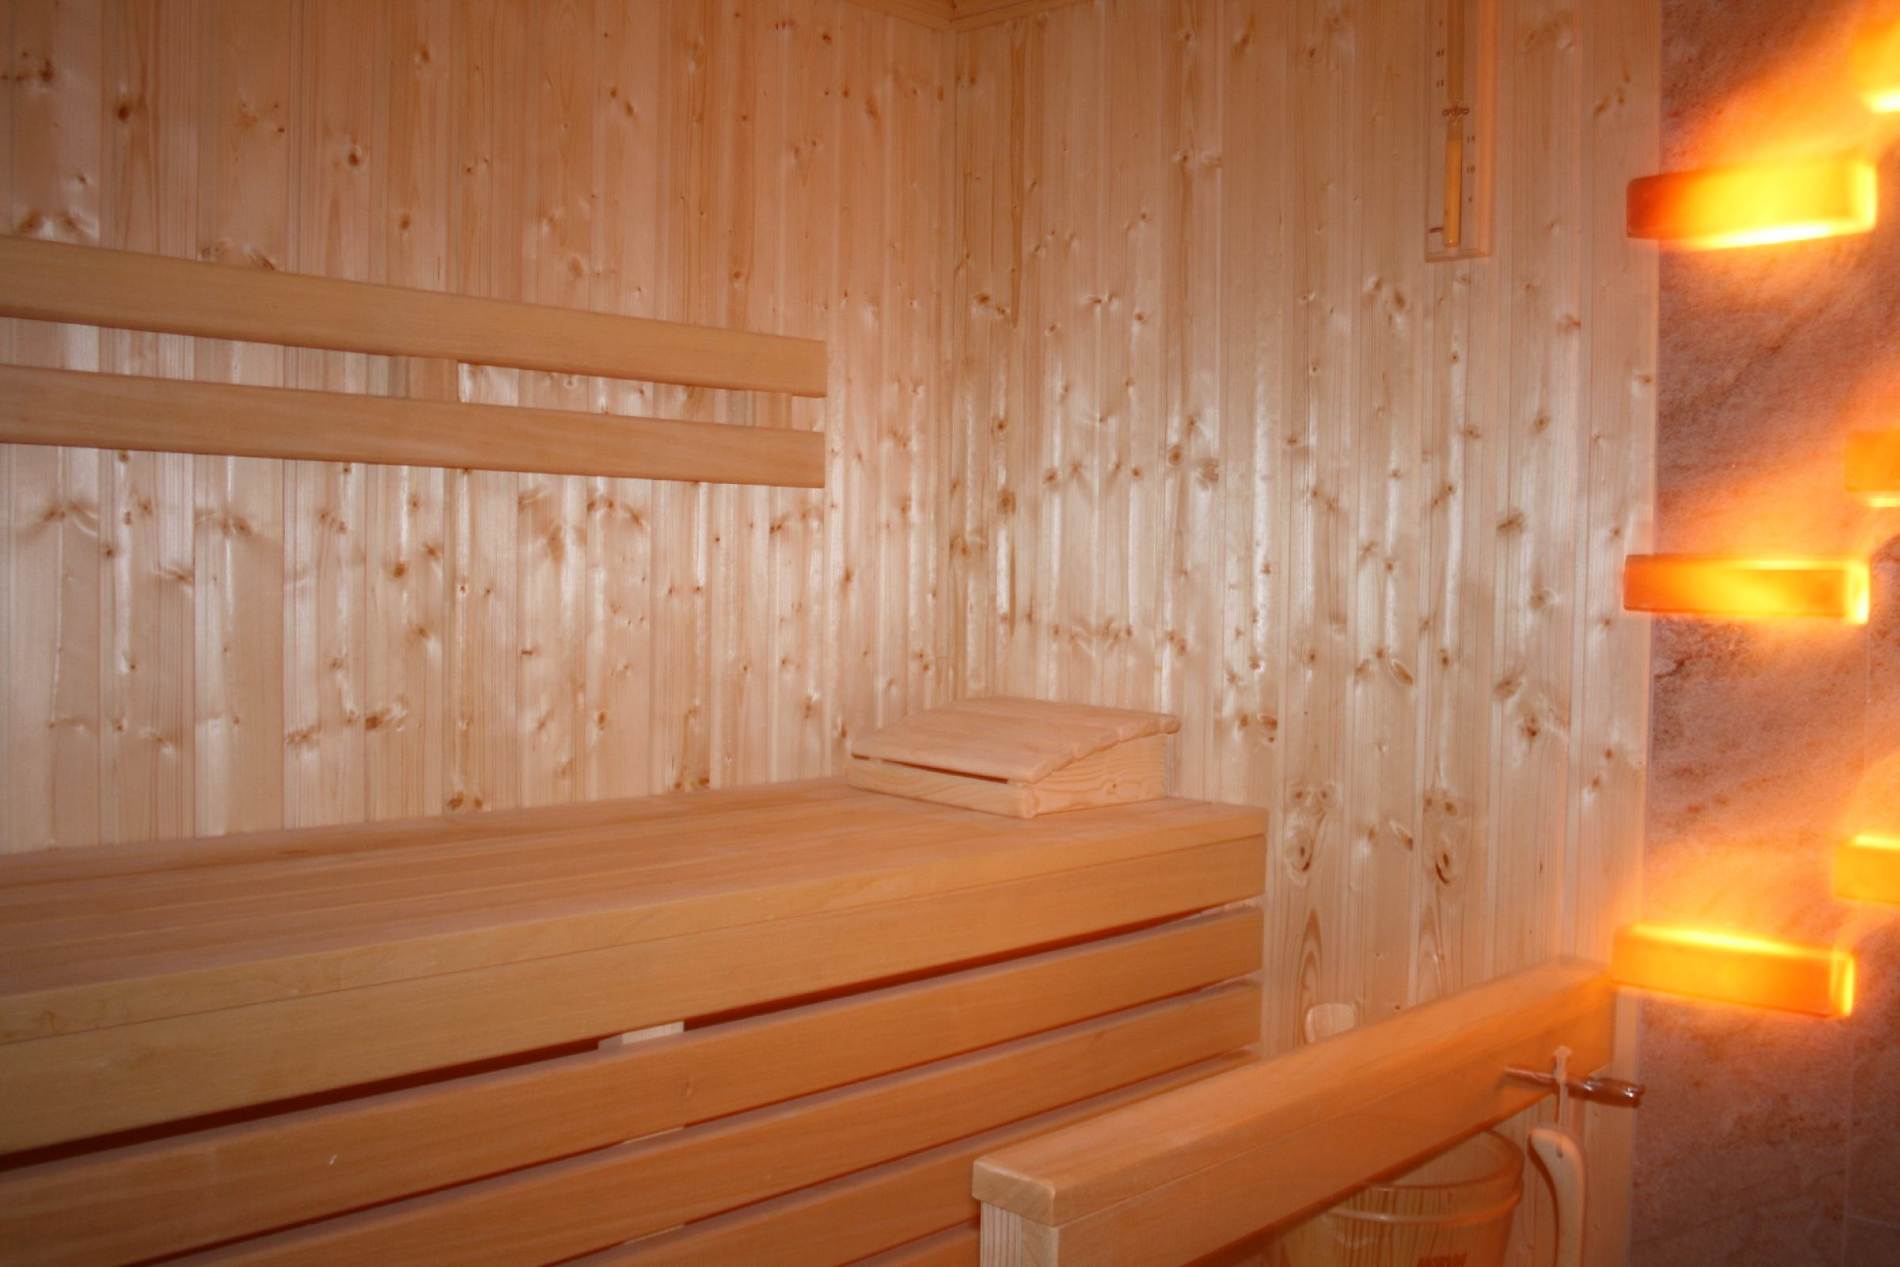 Kaszuby SPA - Sauna - zapraszamy do zapoznania się z ofertą kompleksu Wichrowe Wzgórze